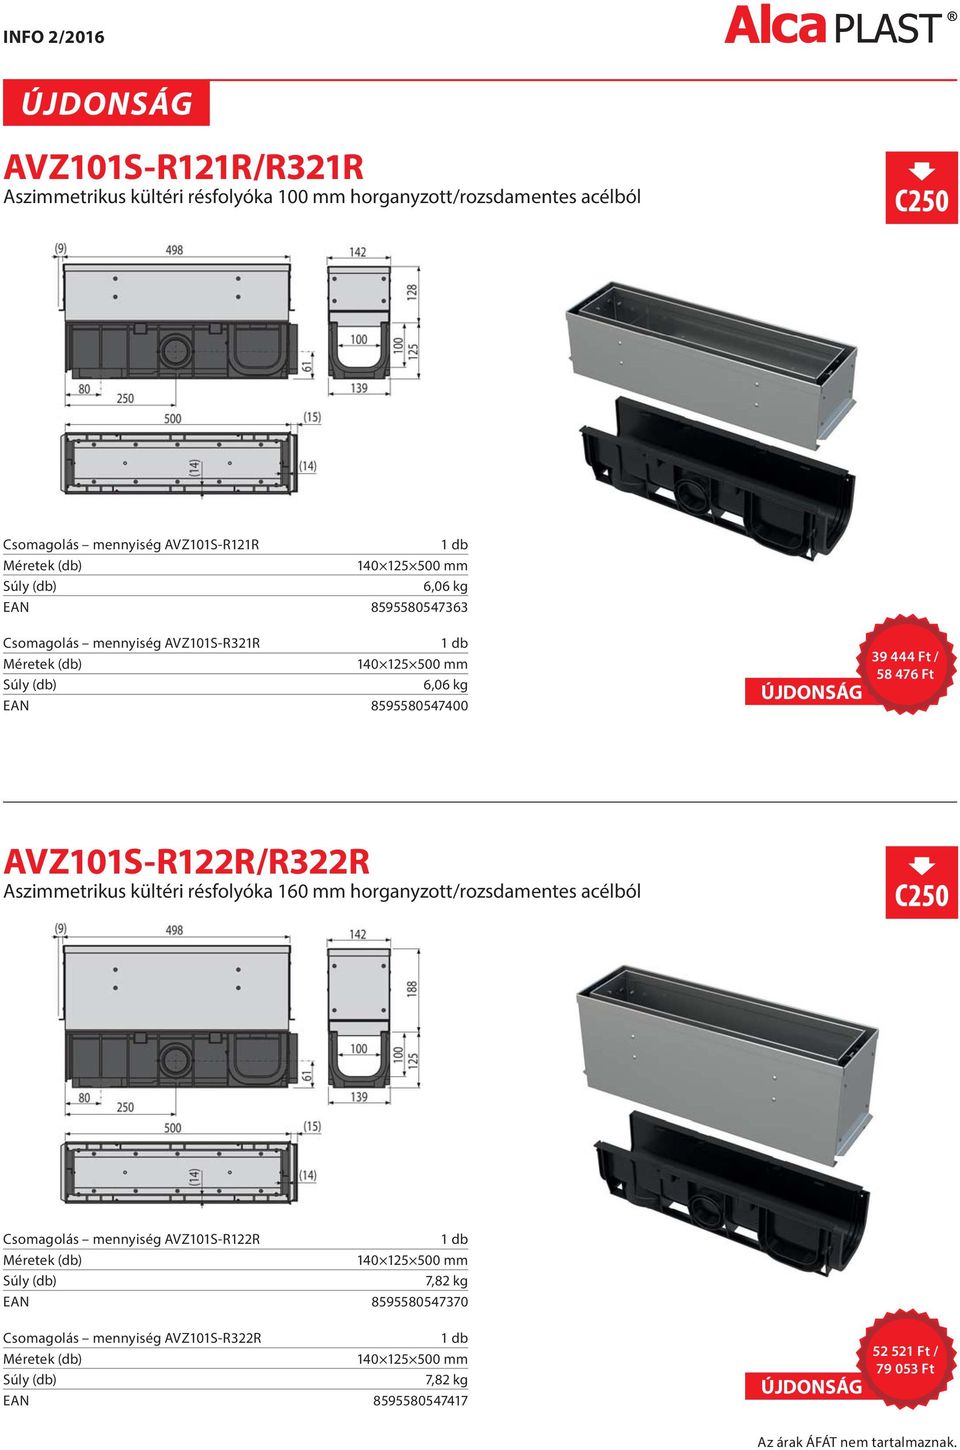 AVZ101S-R122R/R322R Aszimmetrikus kültéri résfolyóka 160 mm horganyzott/rozsdamentes acélból Csomagolás mennyiség AVZ101S-R122R 140 125 500